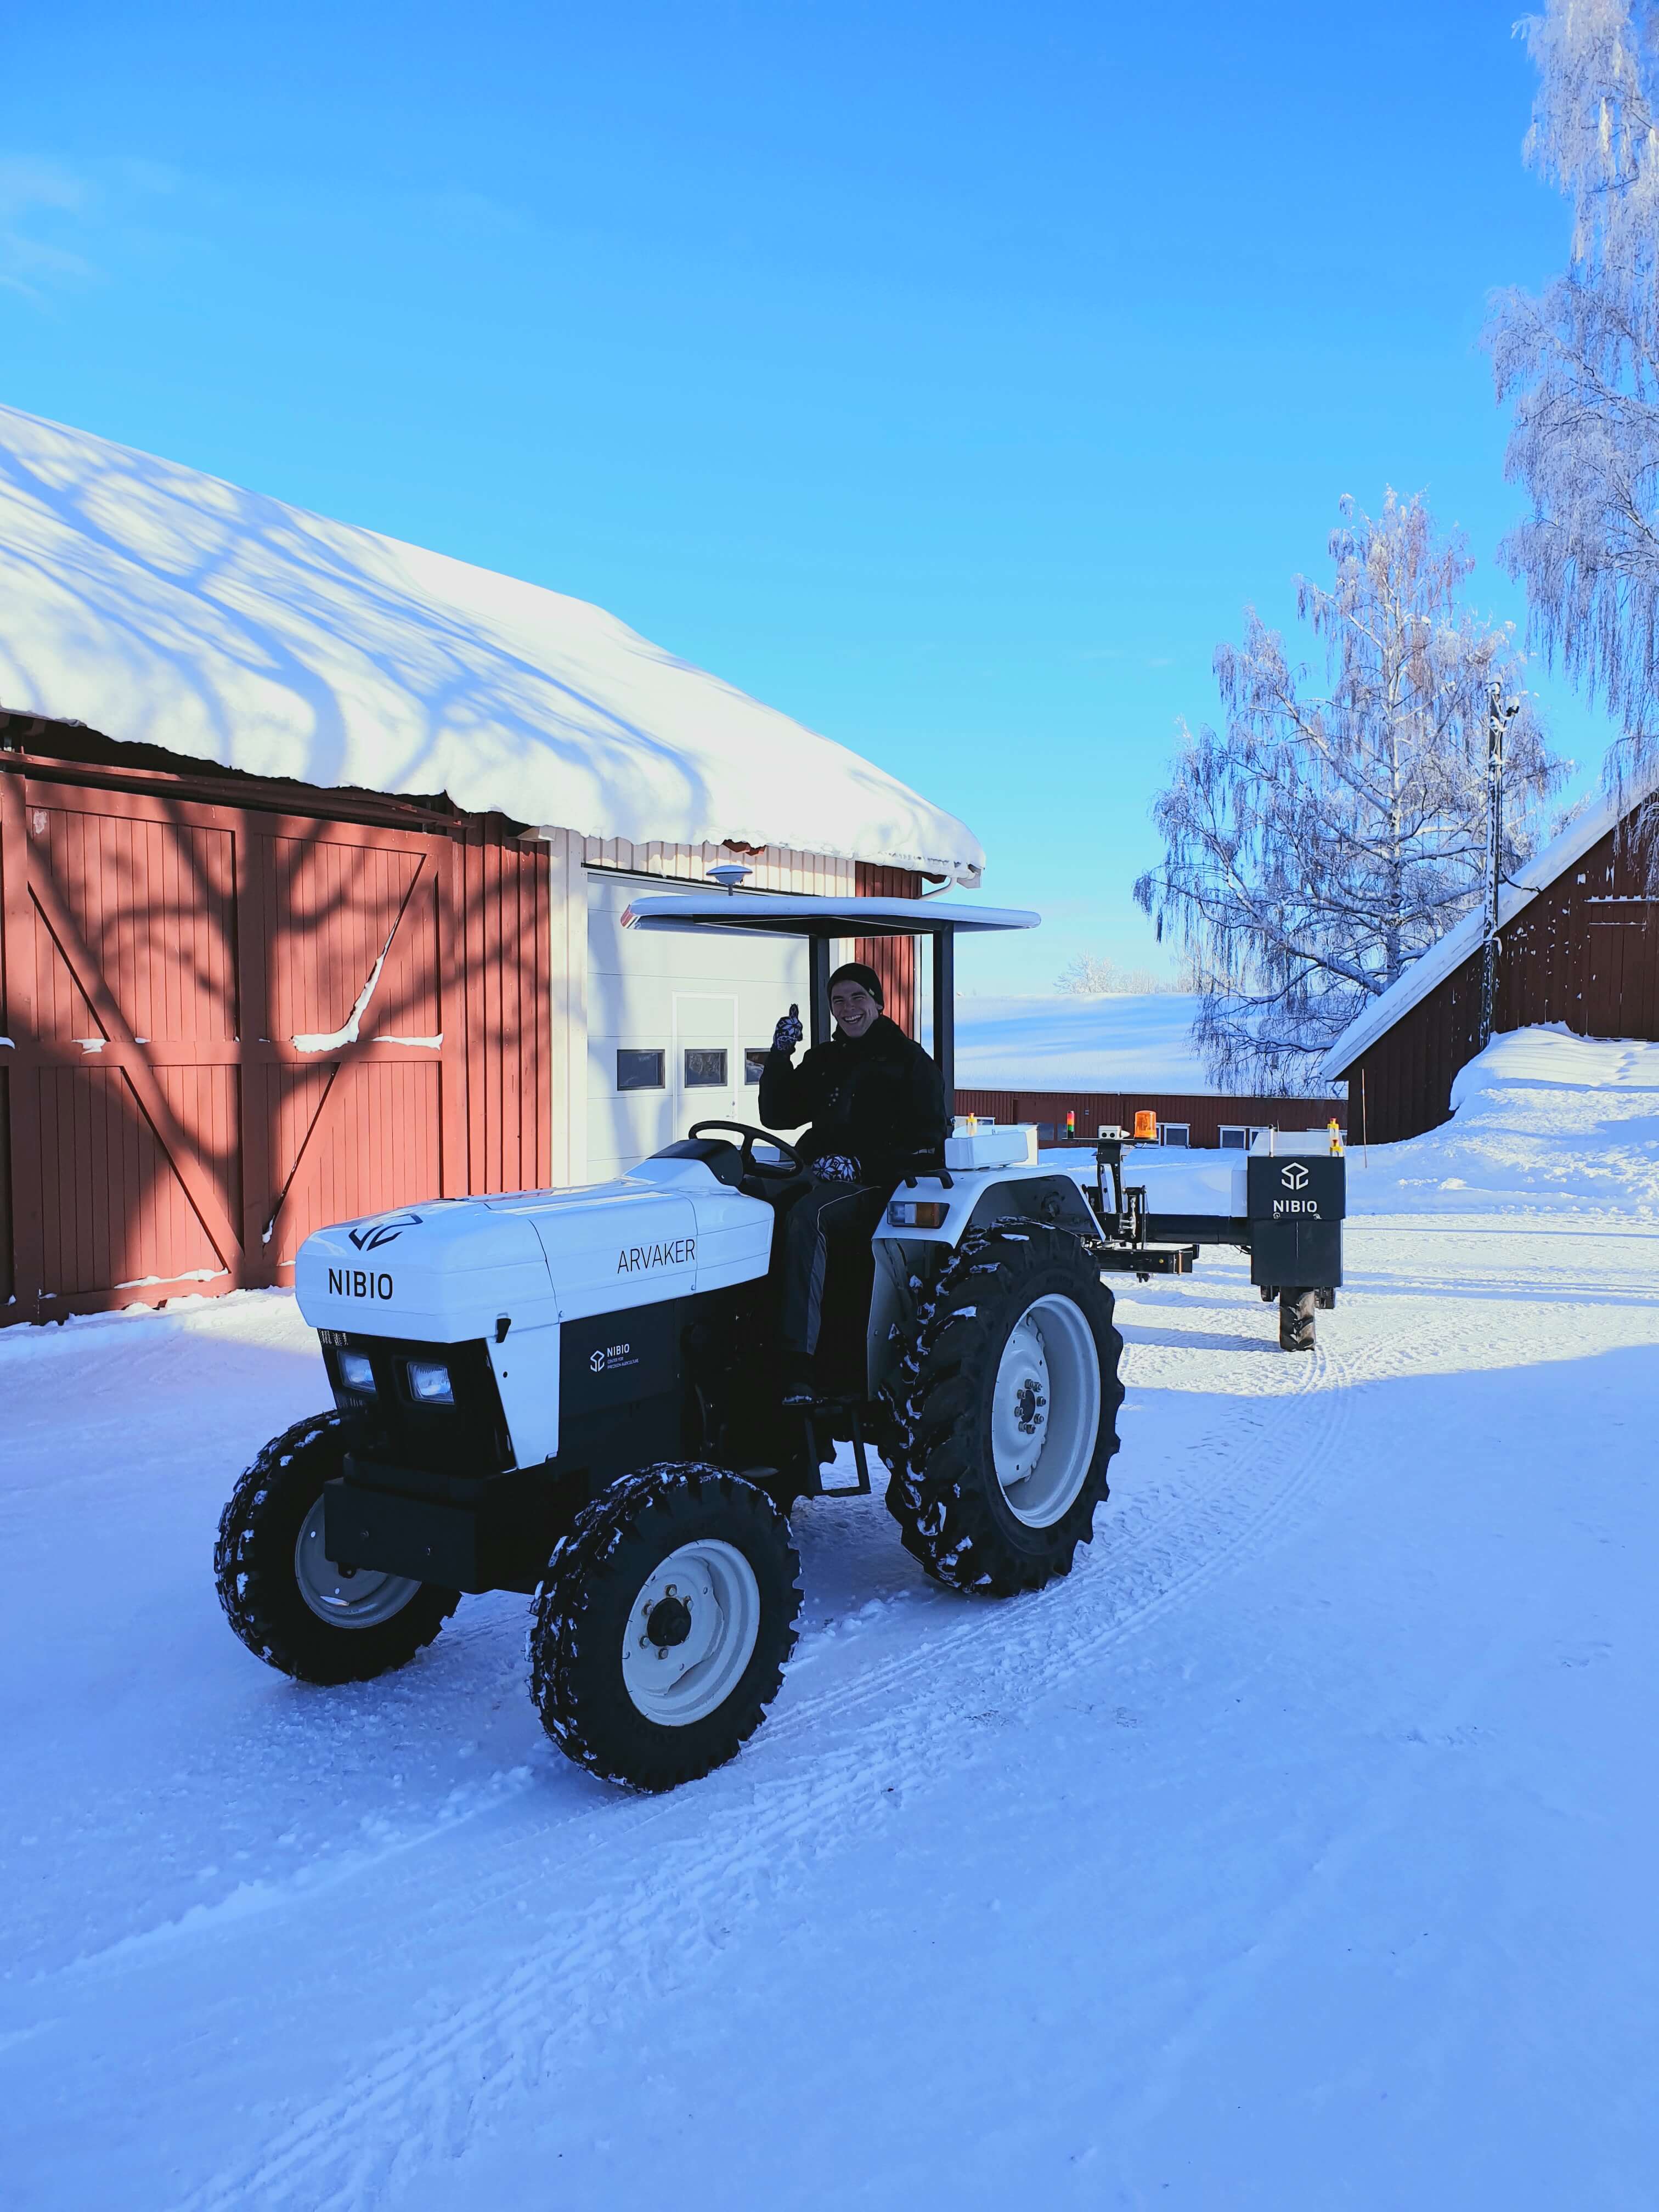 Håvard Johansen Lindgaard test driving Arvaker, with Alsvinn following it autonomously in a leader-follower approach